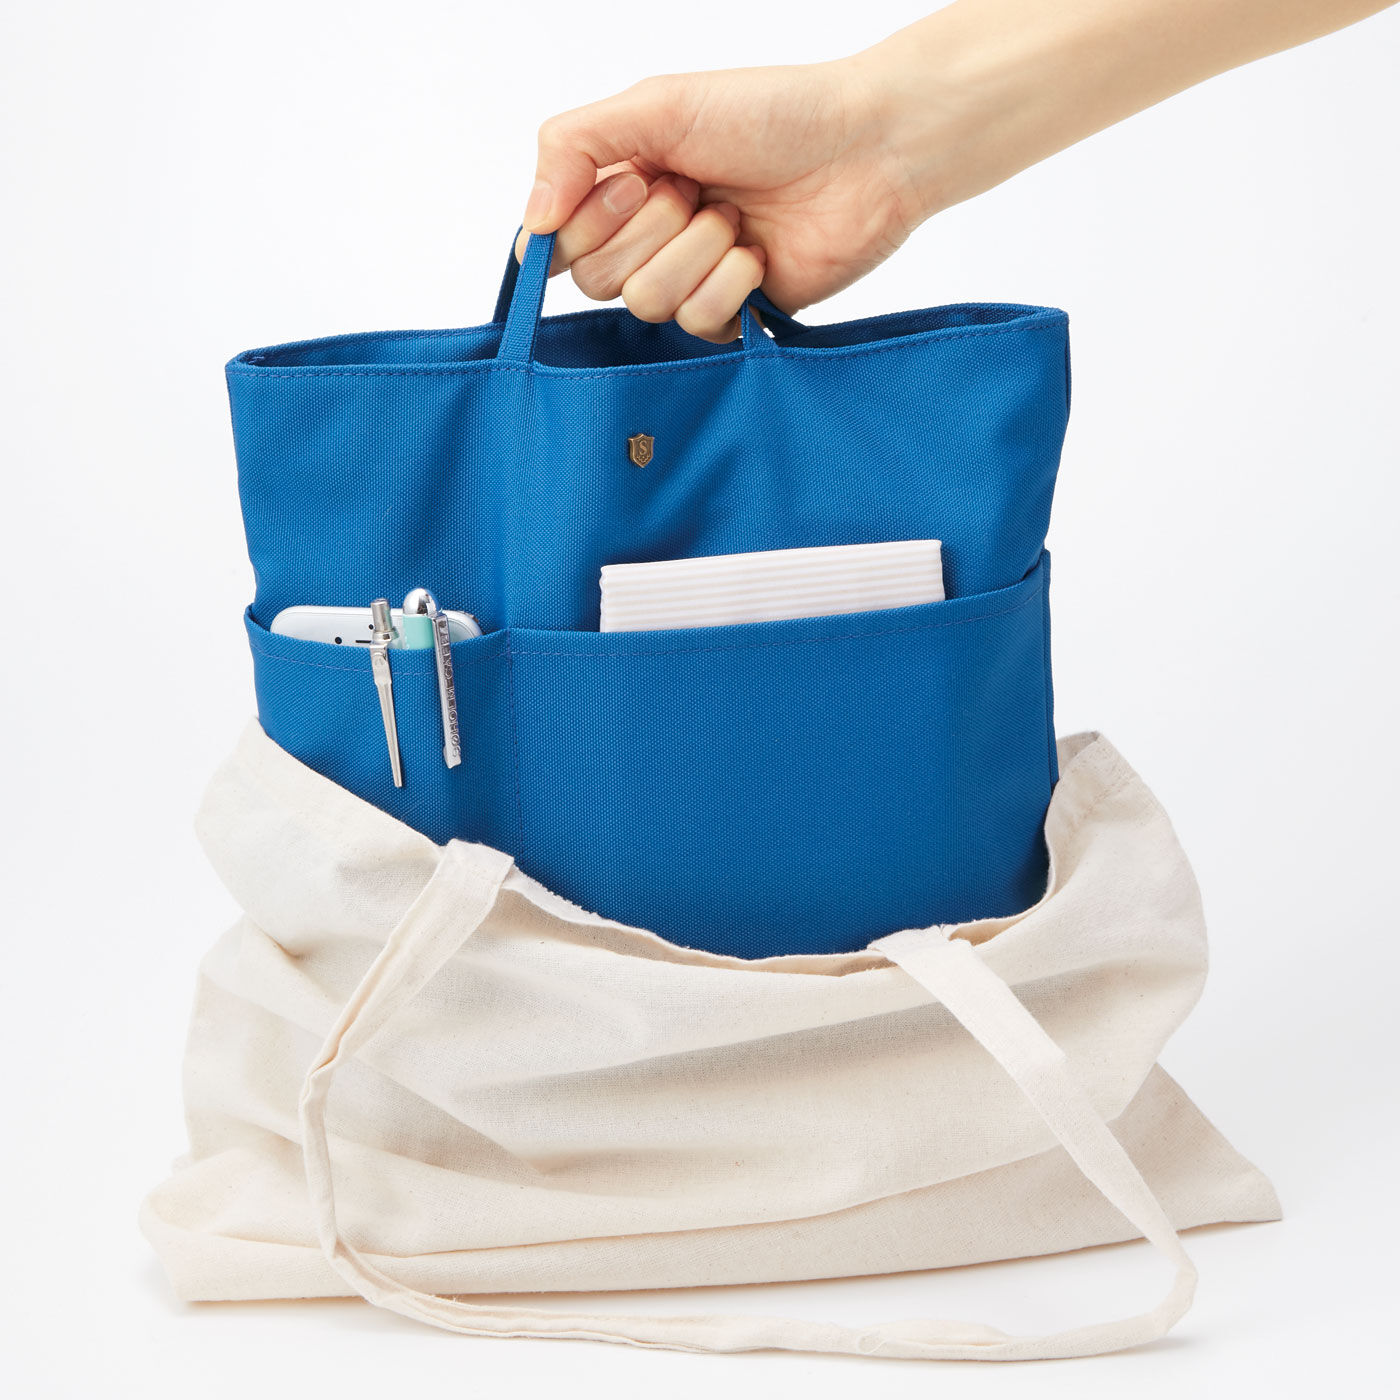 フェリシモの雑貨 Kraso|エッセイスト・整理収納アドバイザー柳沢小実さんと作った リュックや深めのバッグを整理整とん 縦型バッグインポケットの会|布バッグも使いやすく。